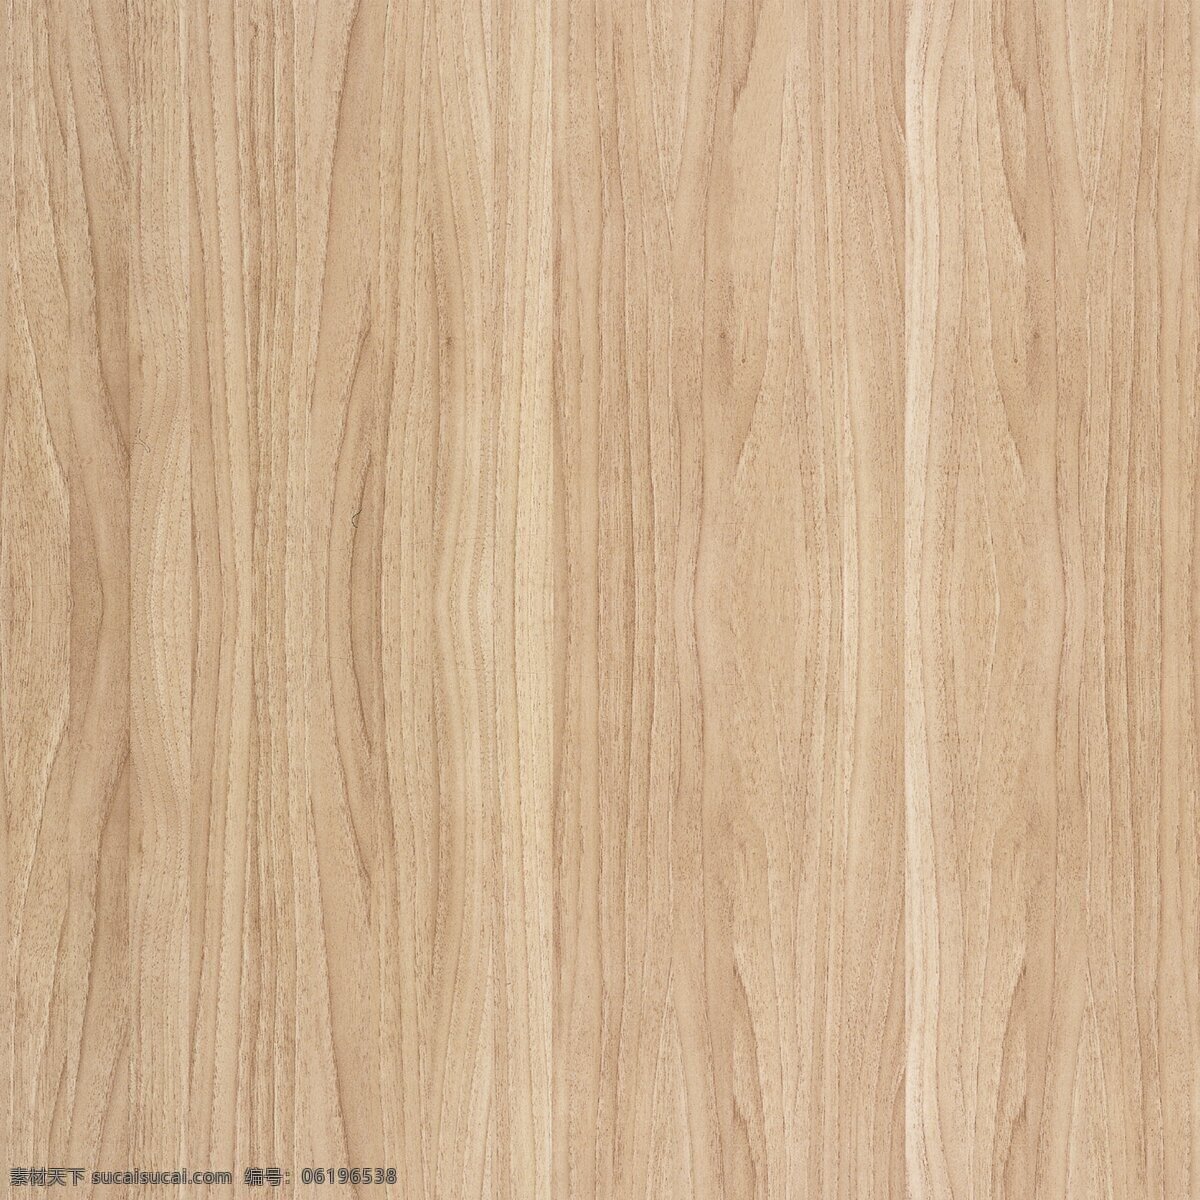 木纹贴图 原木纹 木饰面 浅色木 橡木面板 木头 木纹纹路 贴图 环境设计 室内设计